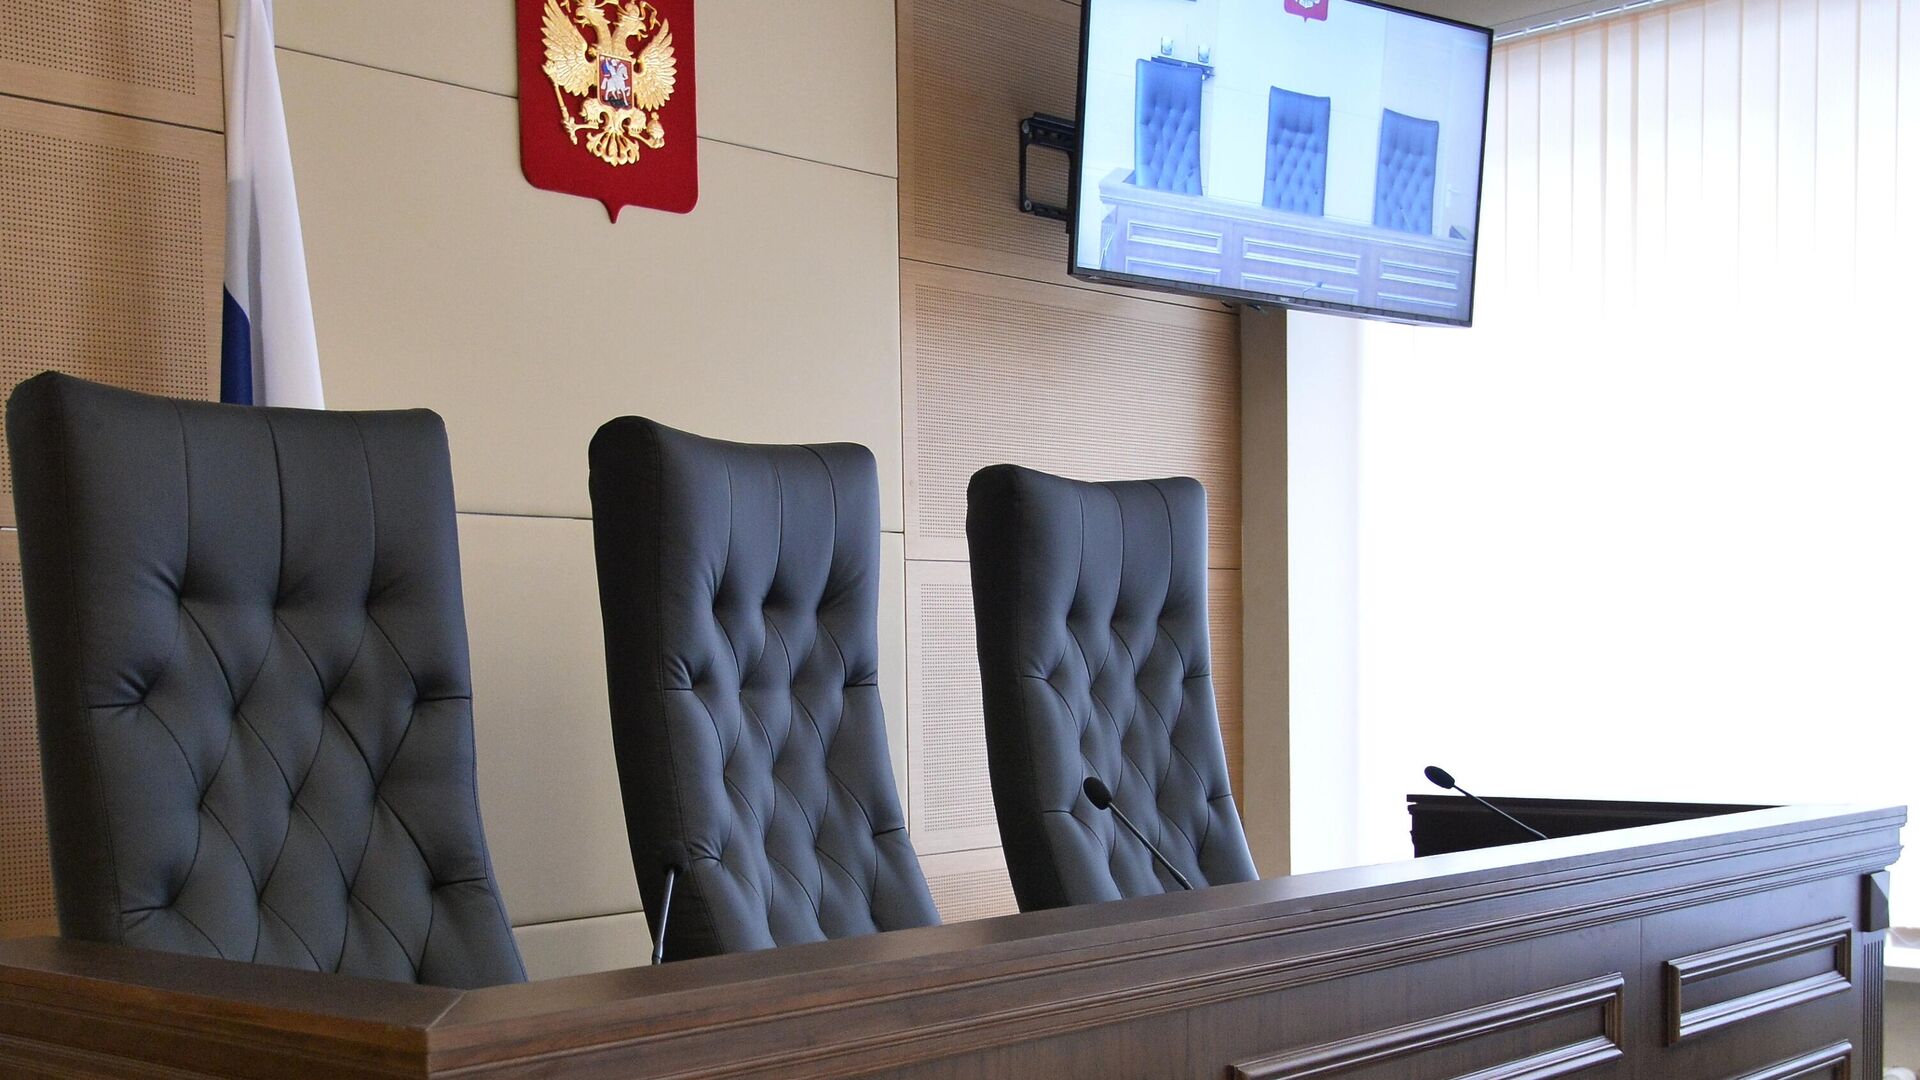 Кресла для судей в зале заседаний - РИА Новости, 1920, 18.06.2021